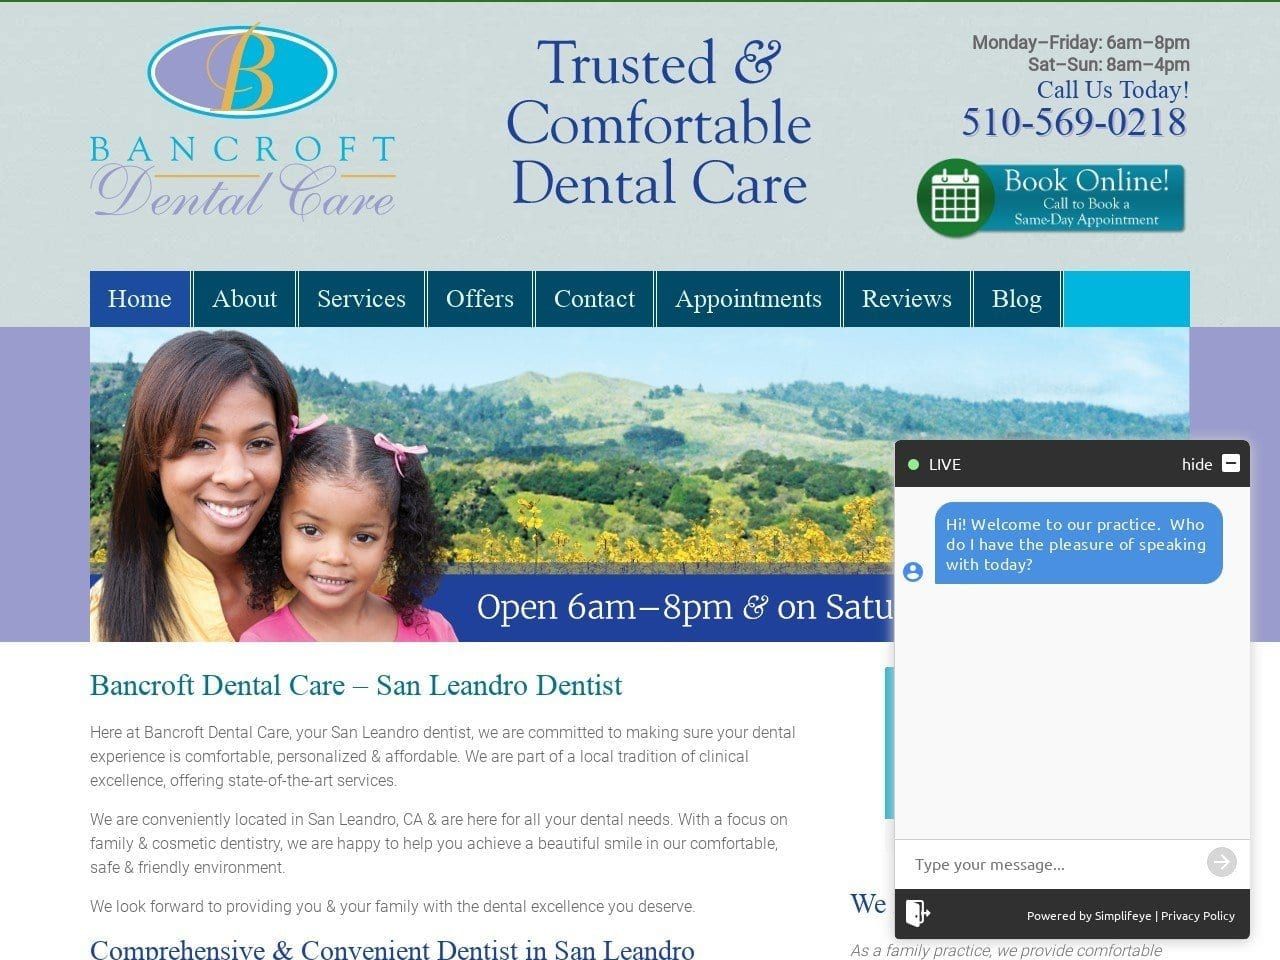 Bancroft Dental Care Website Screenshot from bancroftdentalcare.com